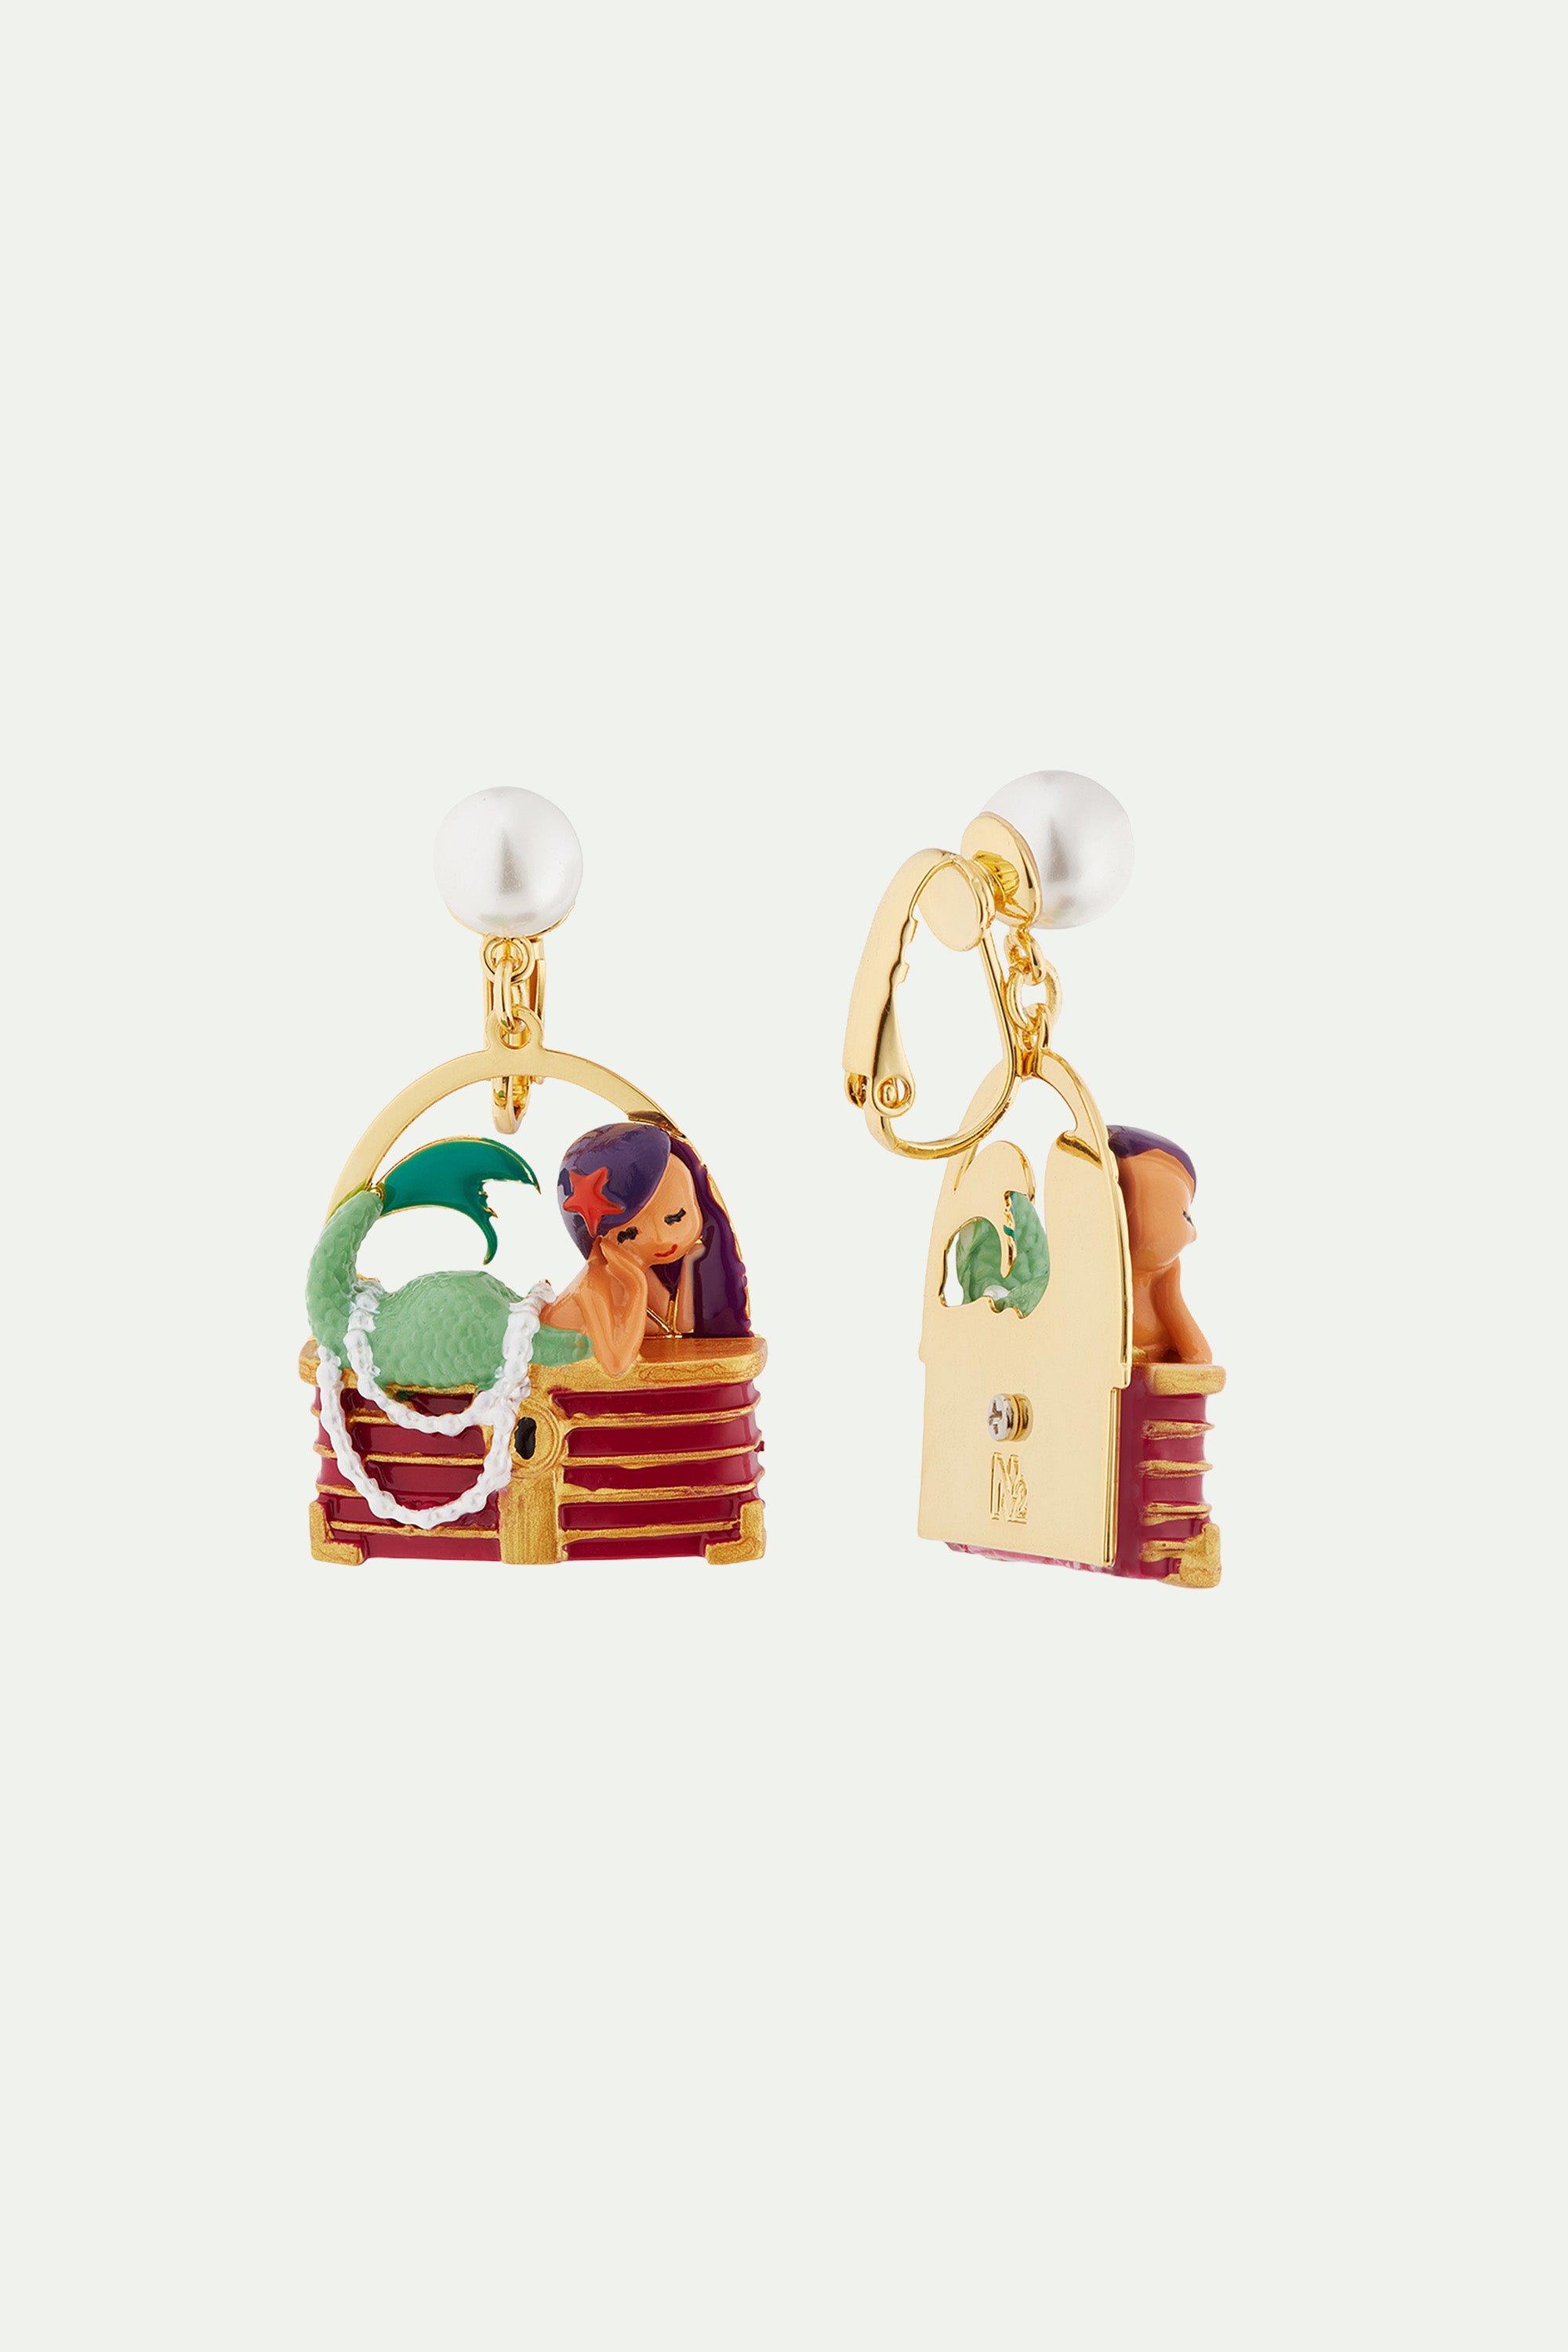 Mermaid and treasure chest post earrings